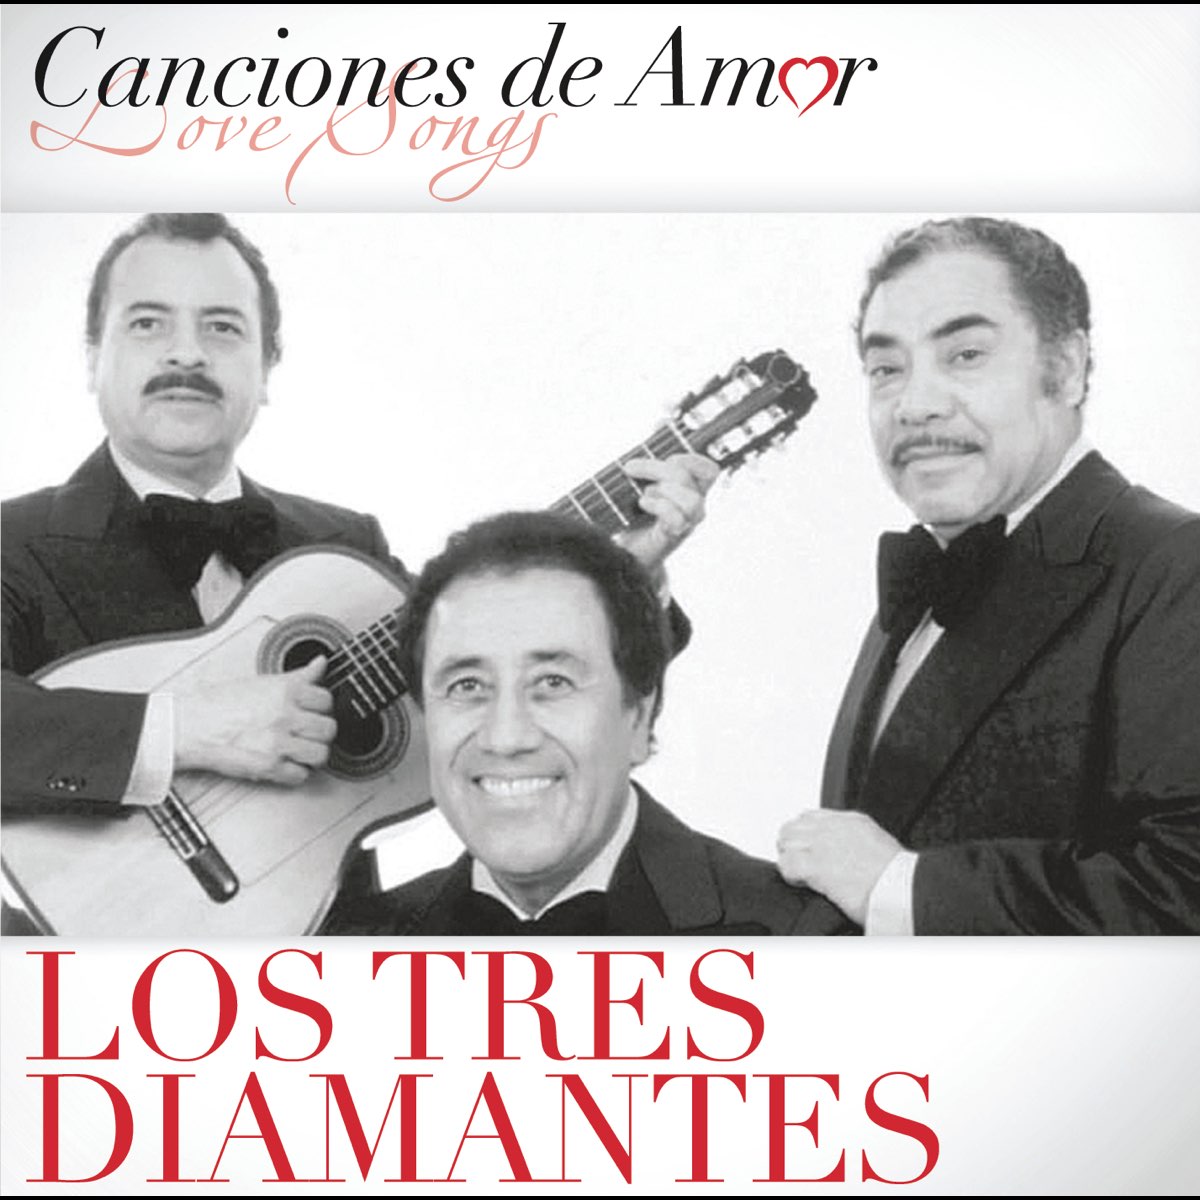 Los Tres Diamantes: Canciones de Amor by Los Tres Diamantes on Apple Music